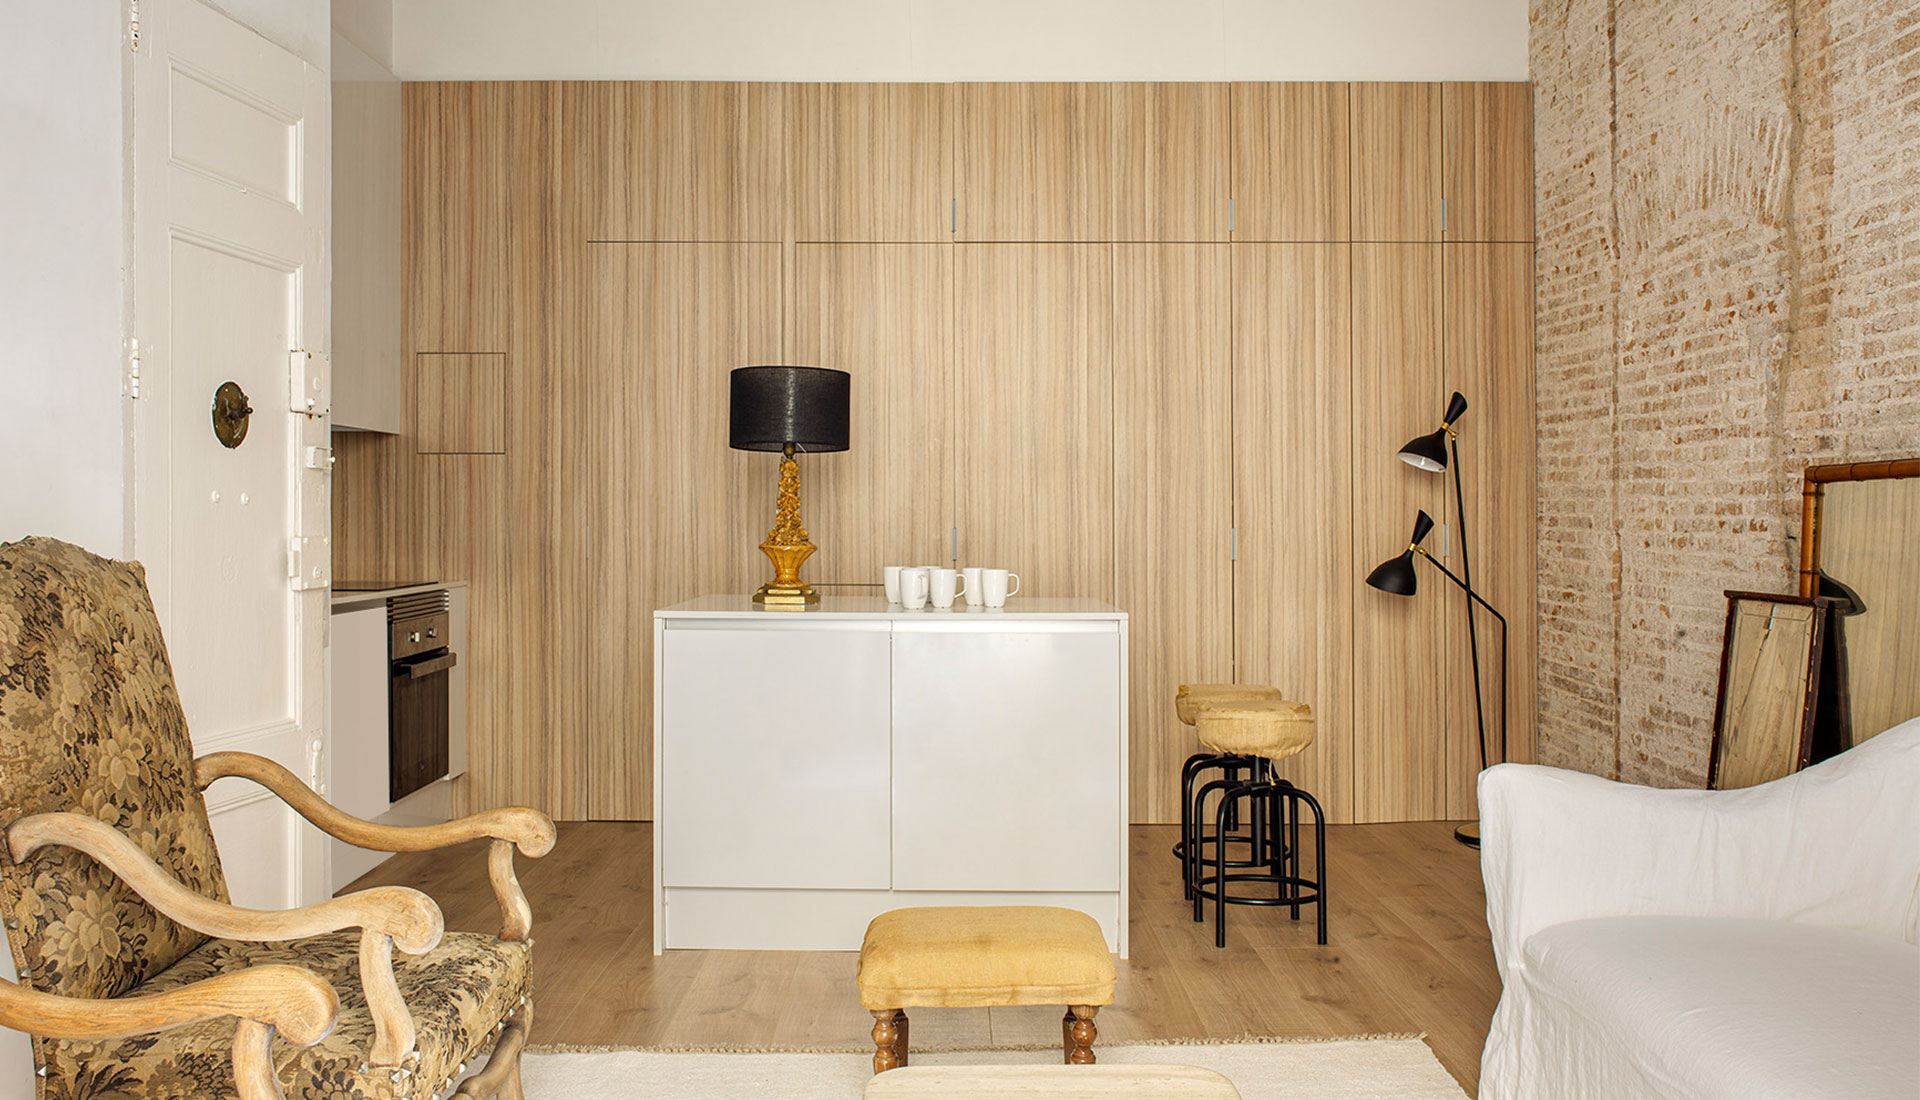 Abrils Studio: квартира 60 кв. метров в Барселоне